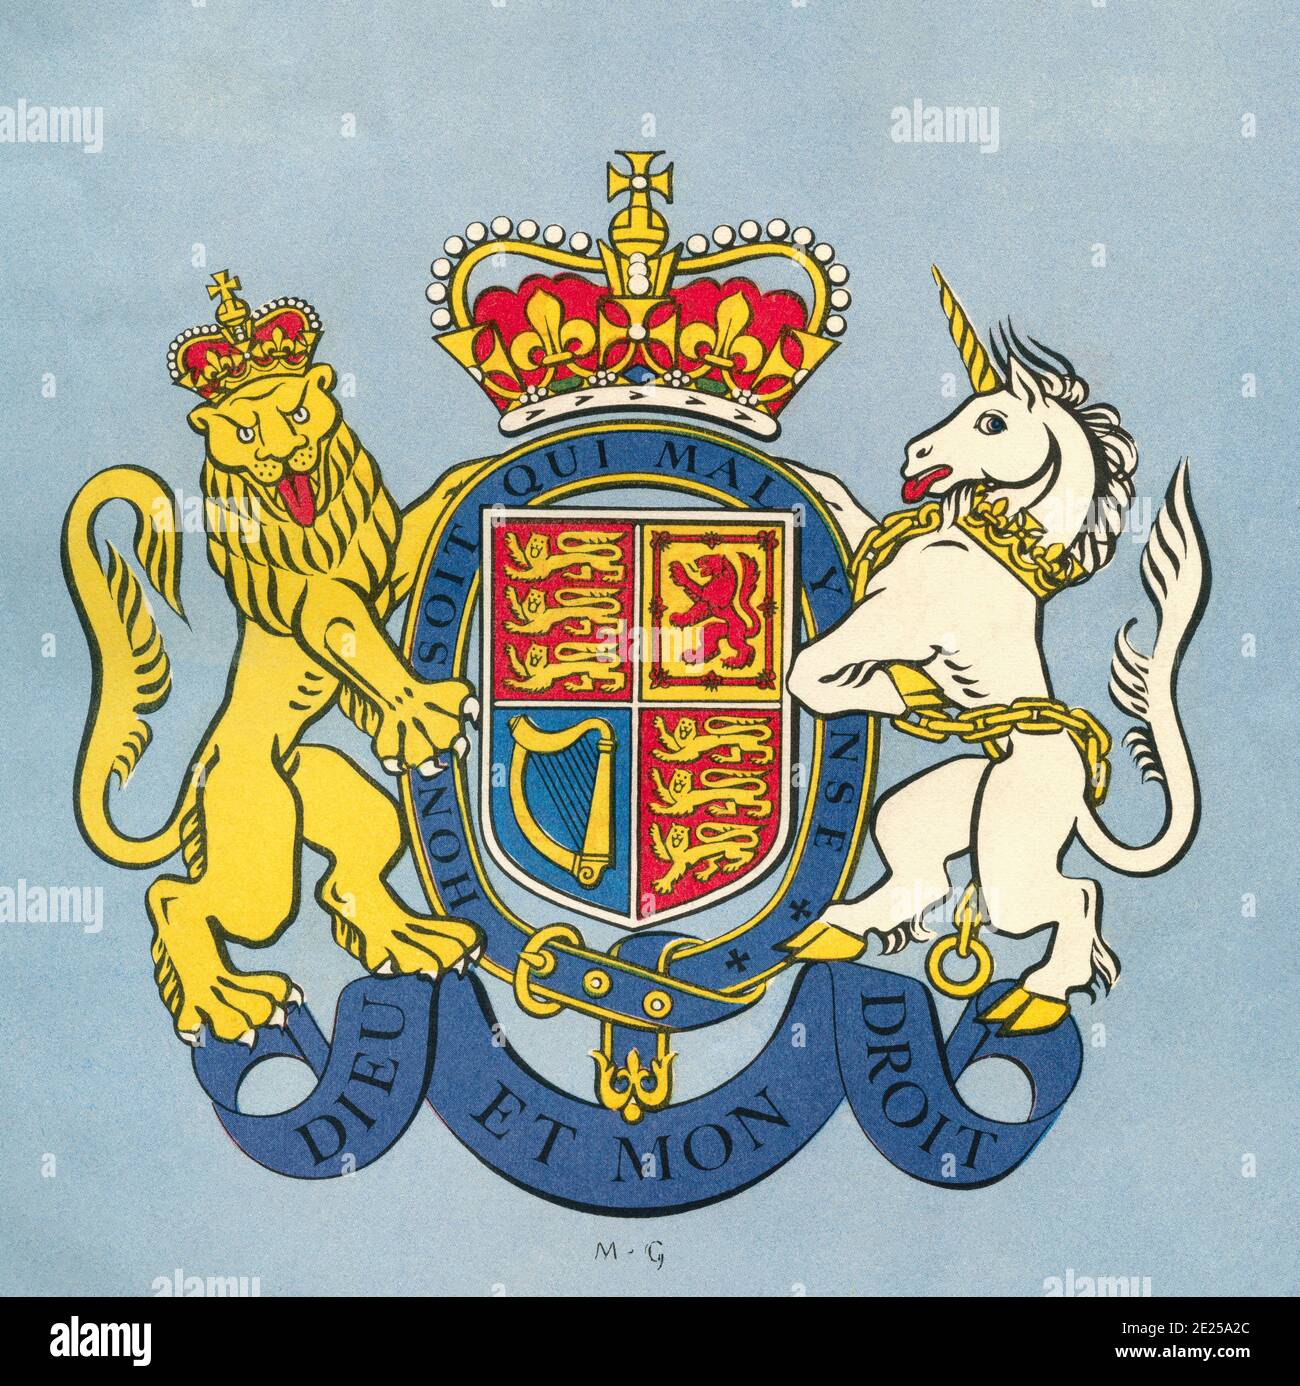 ÉDITORIAL SEULEMENT le lion et le licorne, le blason royal du Royaume-Uni. Du livre de la Reine Elizabeth Coronation, publié en 1953. Banque D'Images